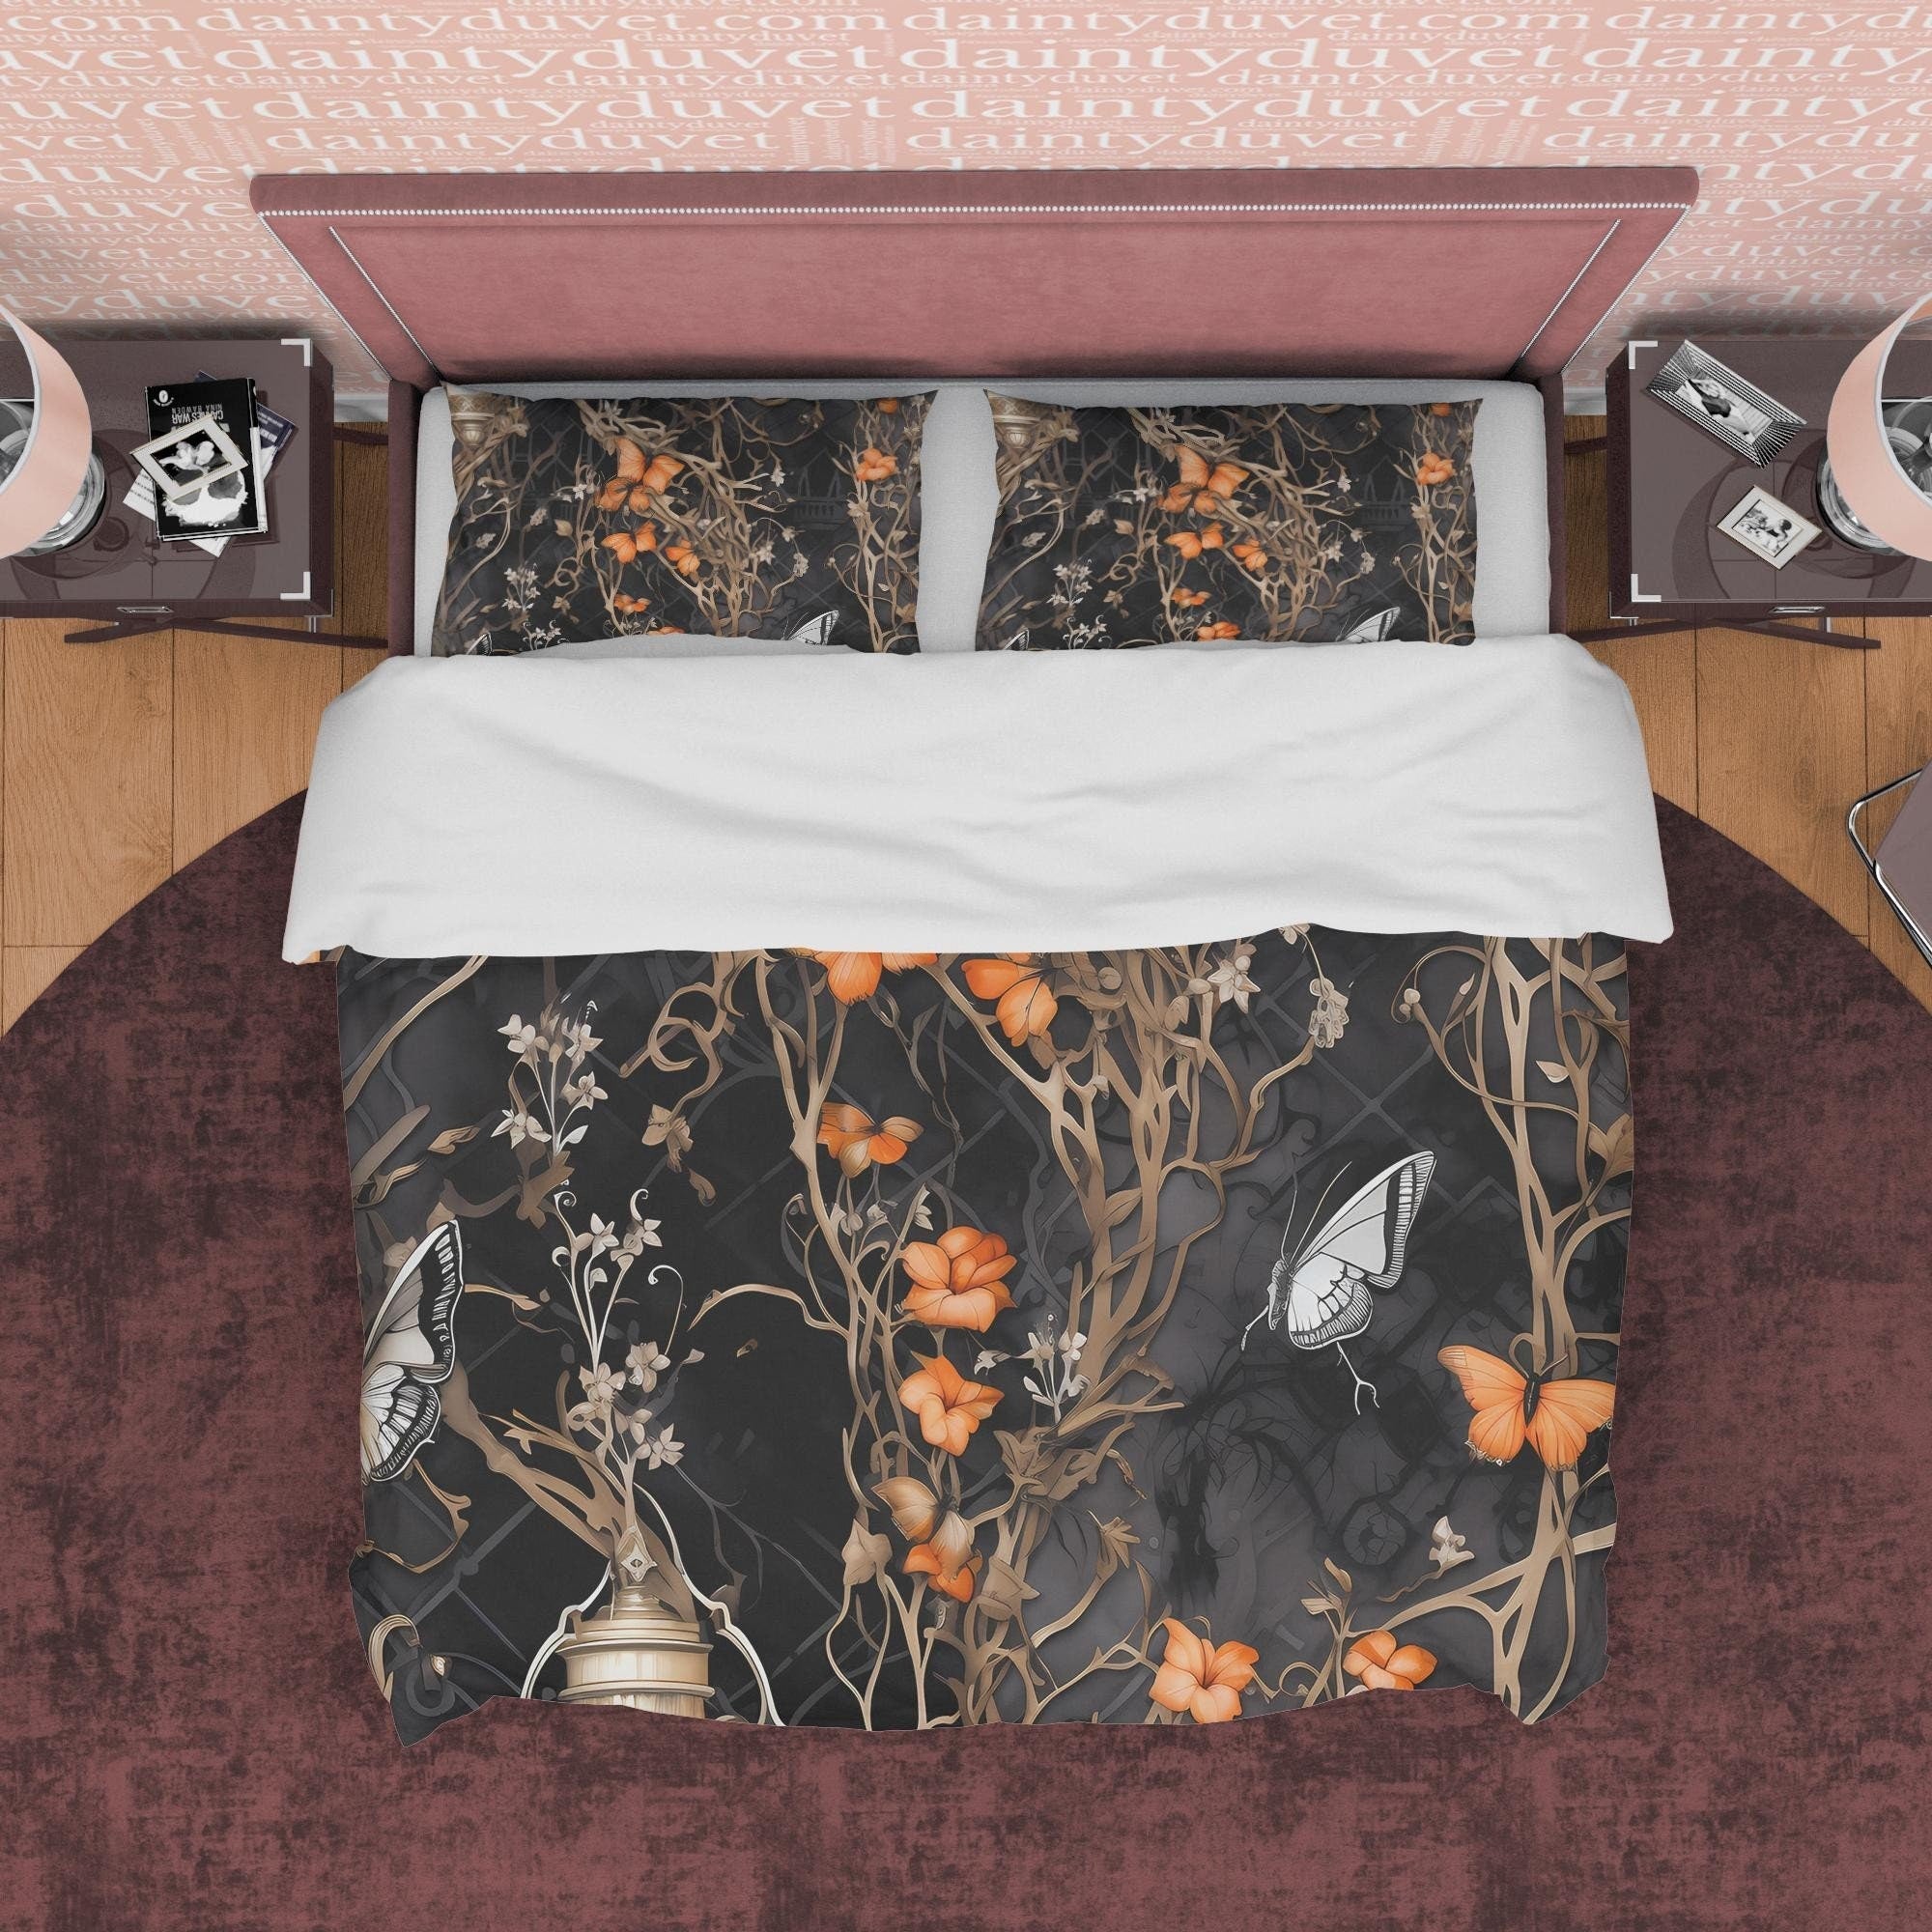 Death Butterfly Duvet Cover Set, Dark Quilt Cover Aesthetic Zipper Bedding, Halloween Room Decor, Black Floral Vine Blanket Cover